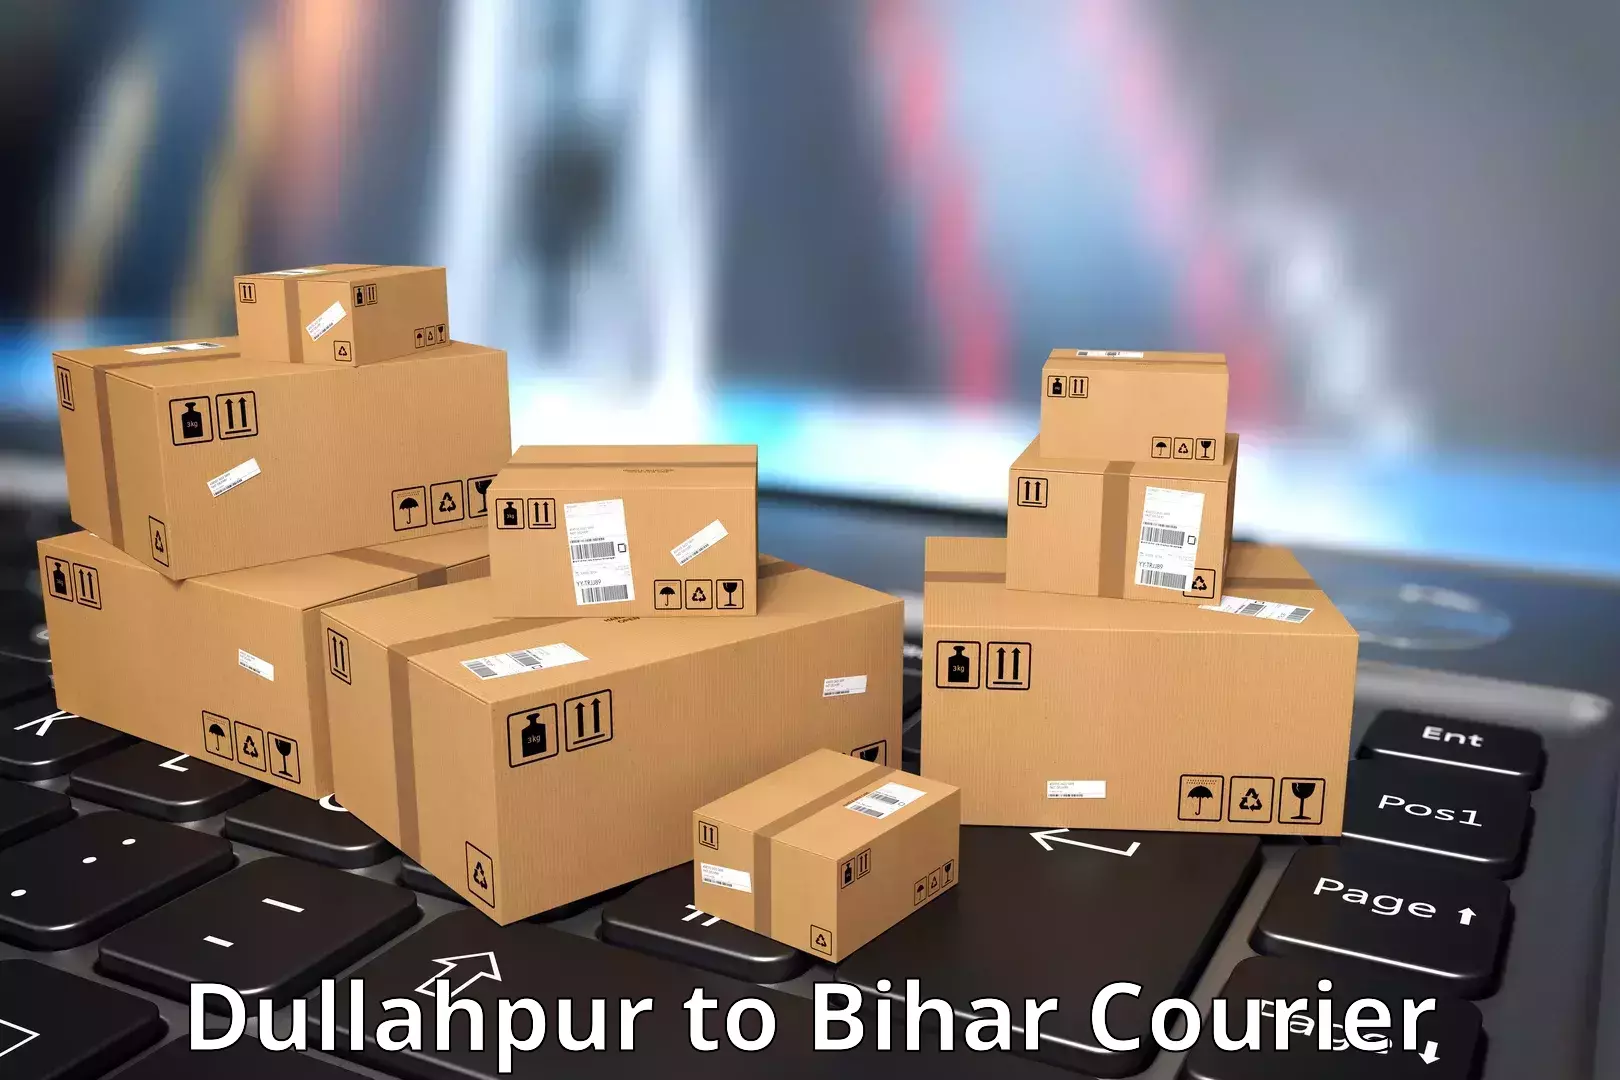 Modern parcel services Dullahpur to Jhanjharpur